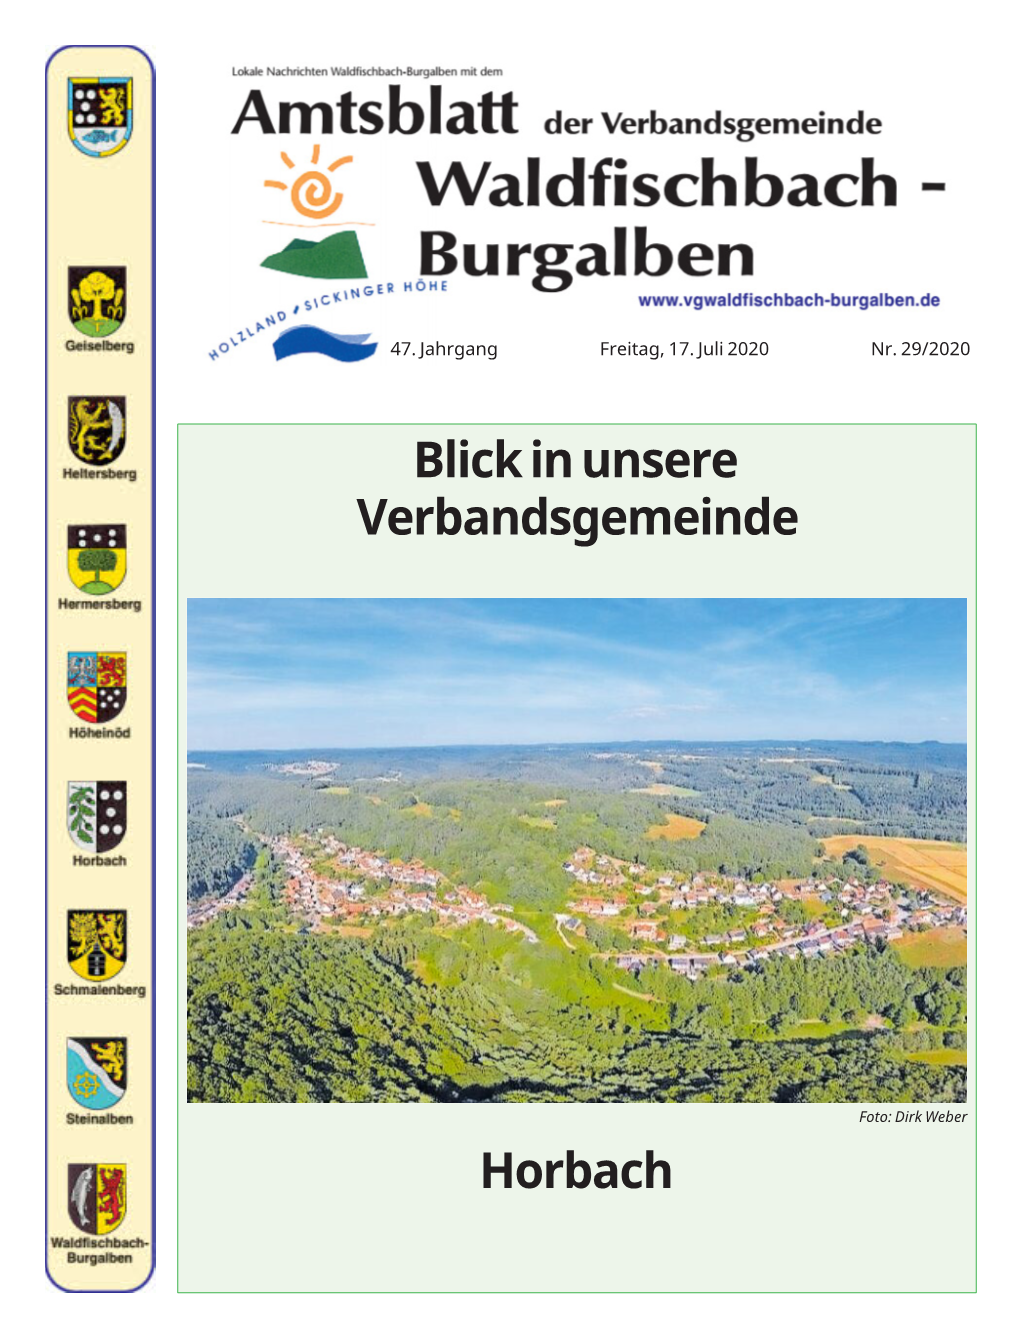 Blickinunsere Verbandsgemeinde Horbach